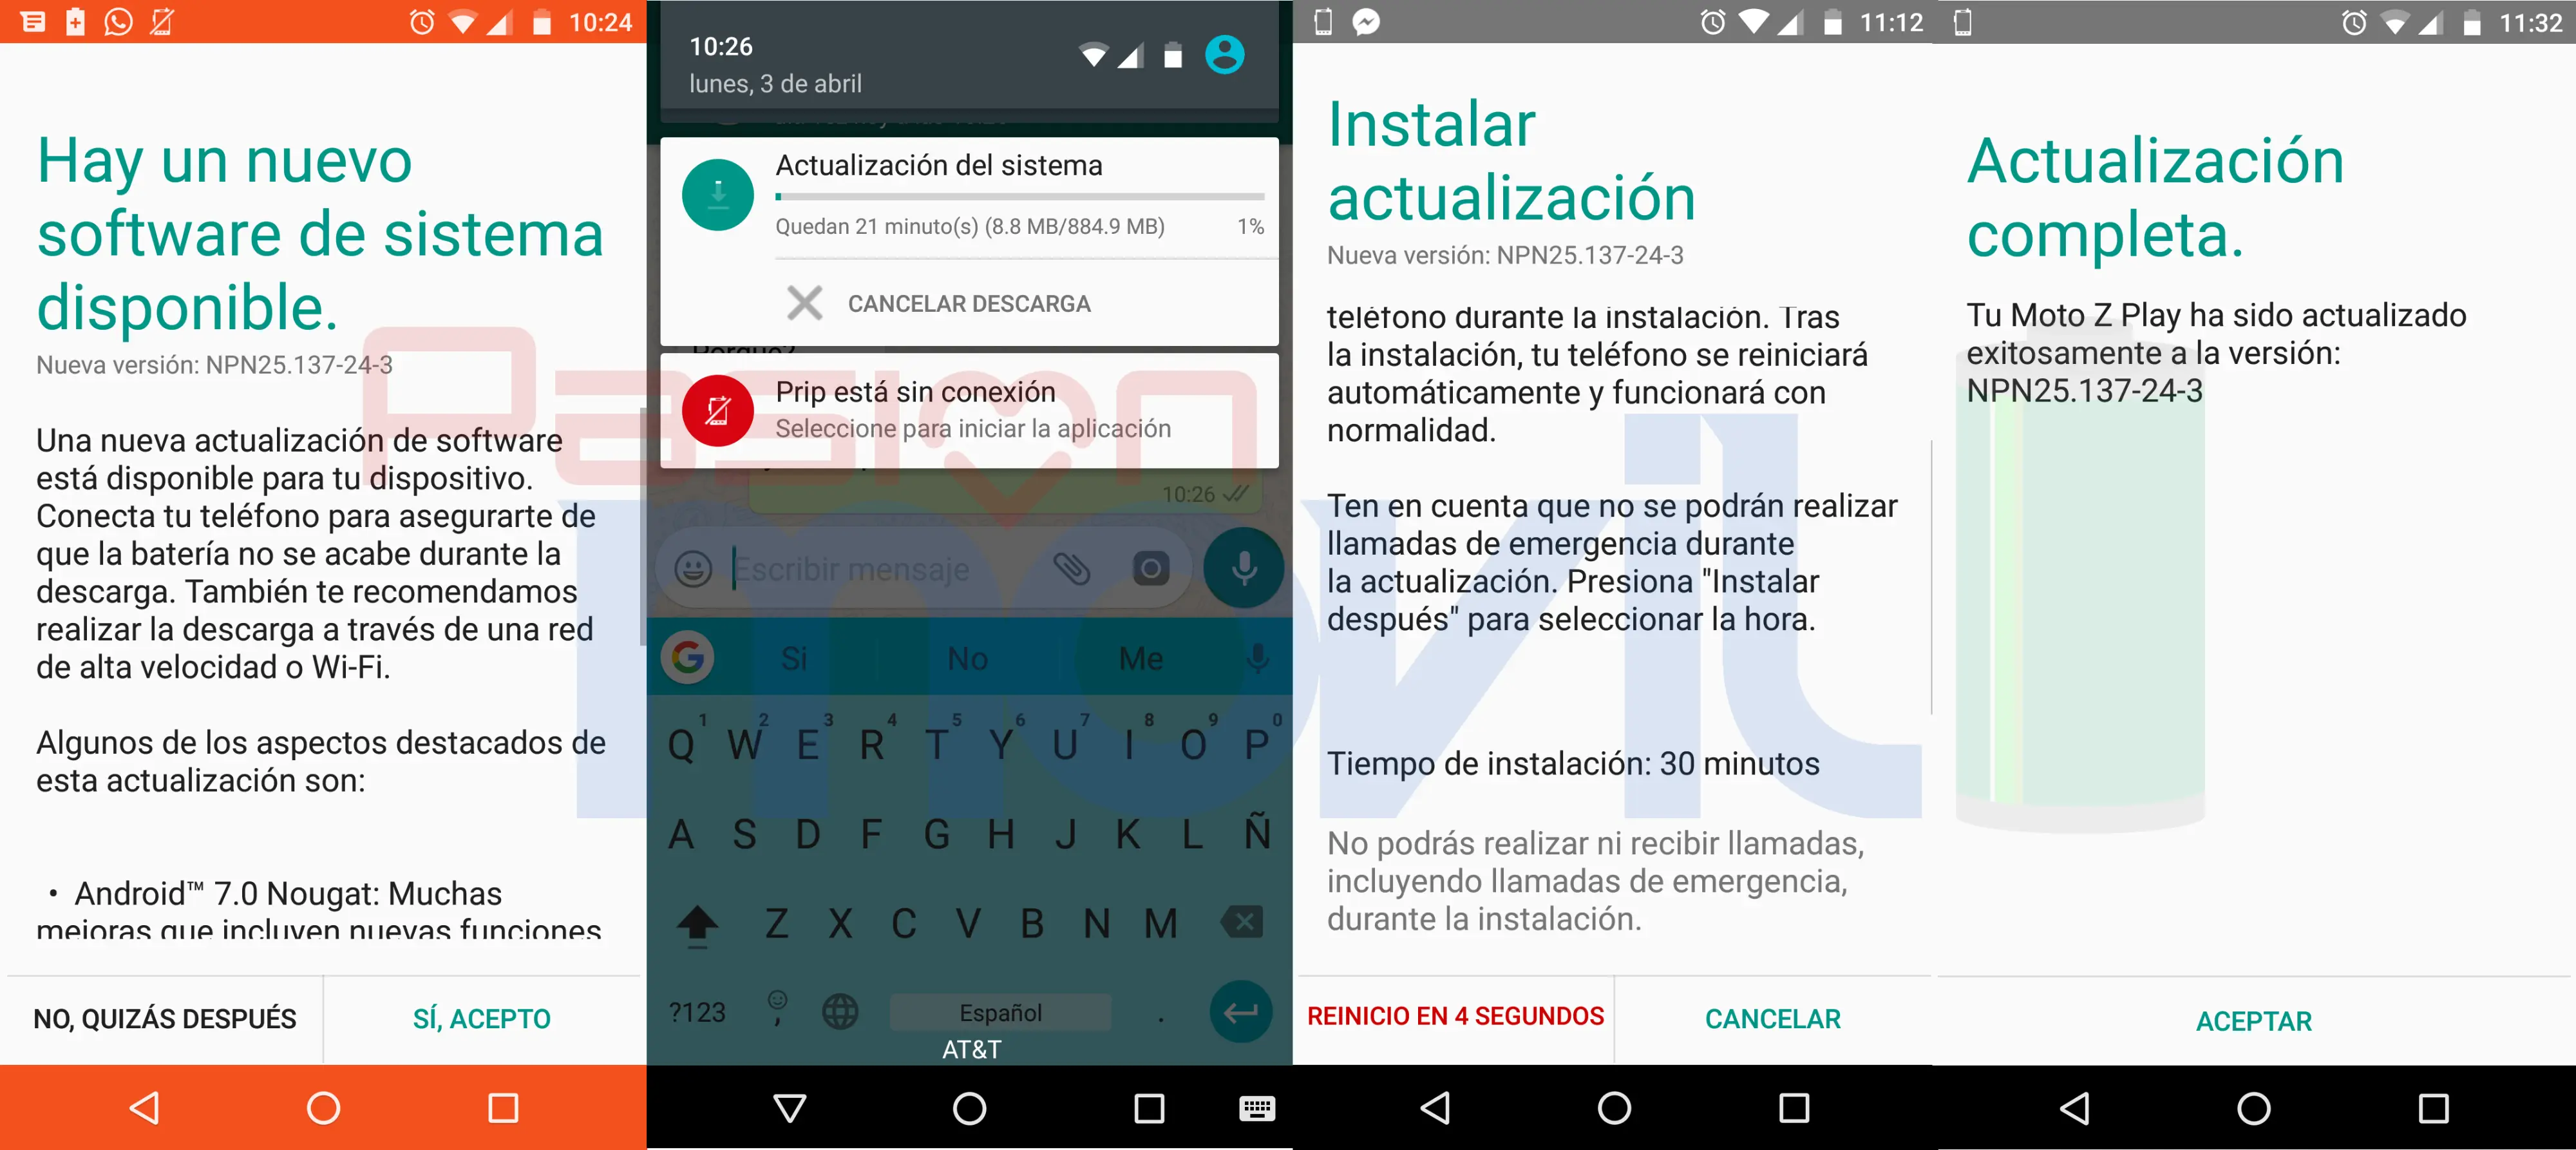 moto-z-play actualizacion android 7.0 nougat mexico att